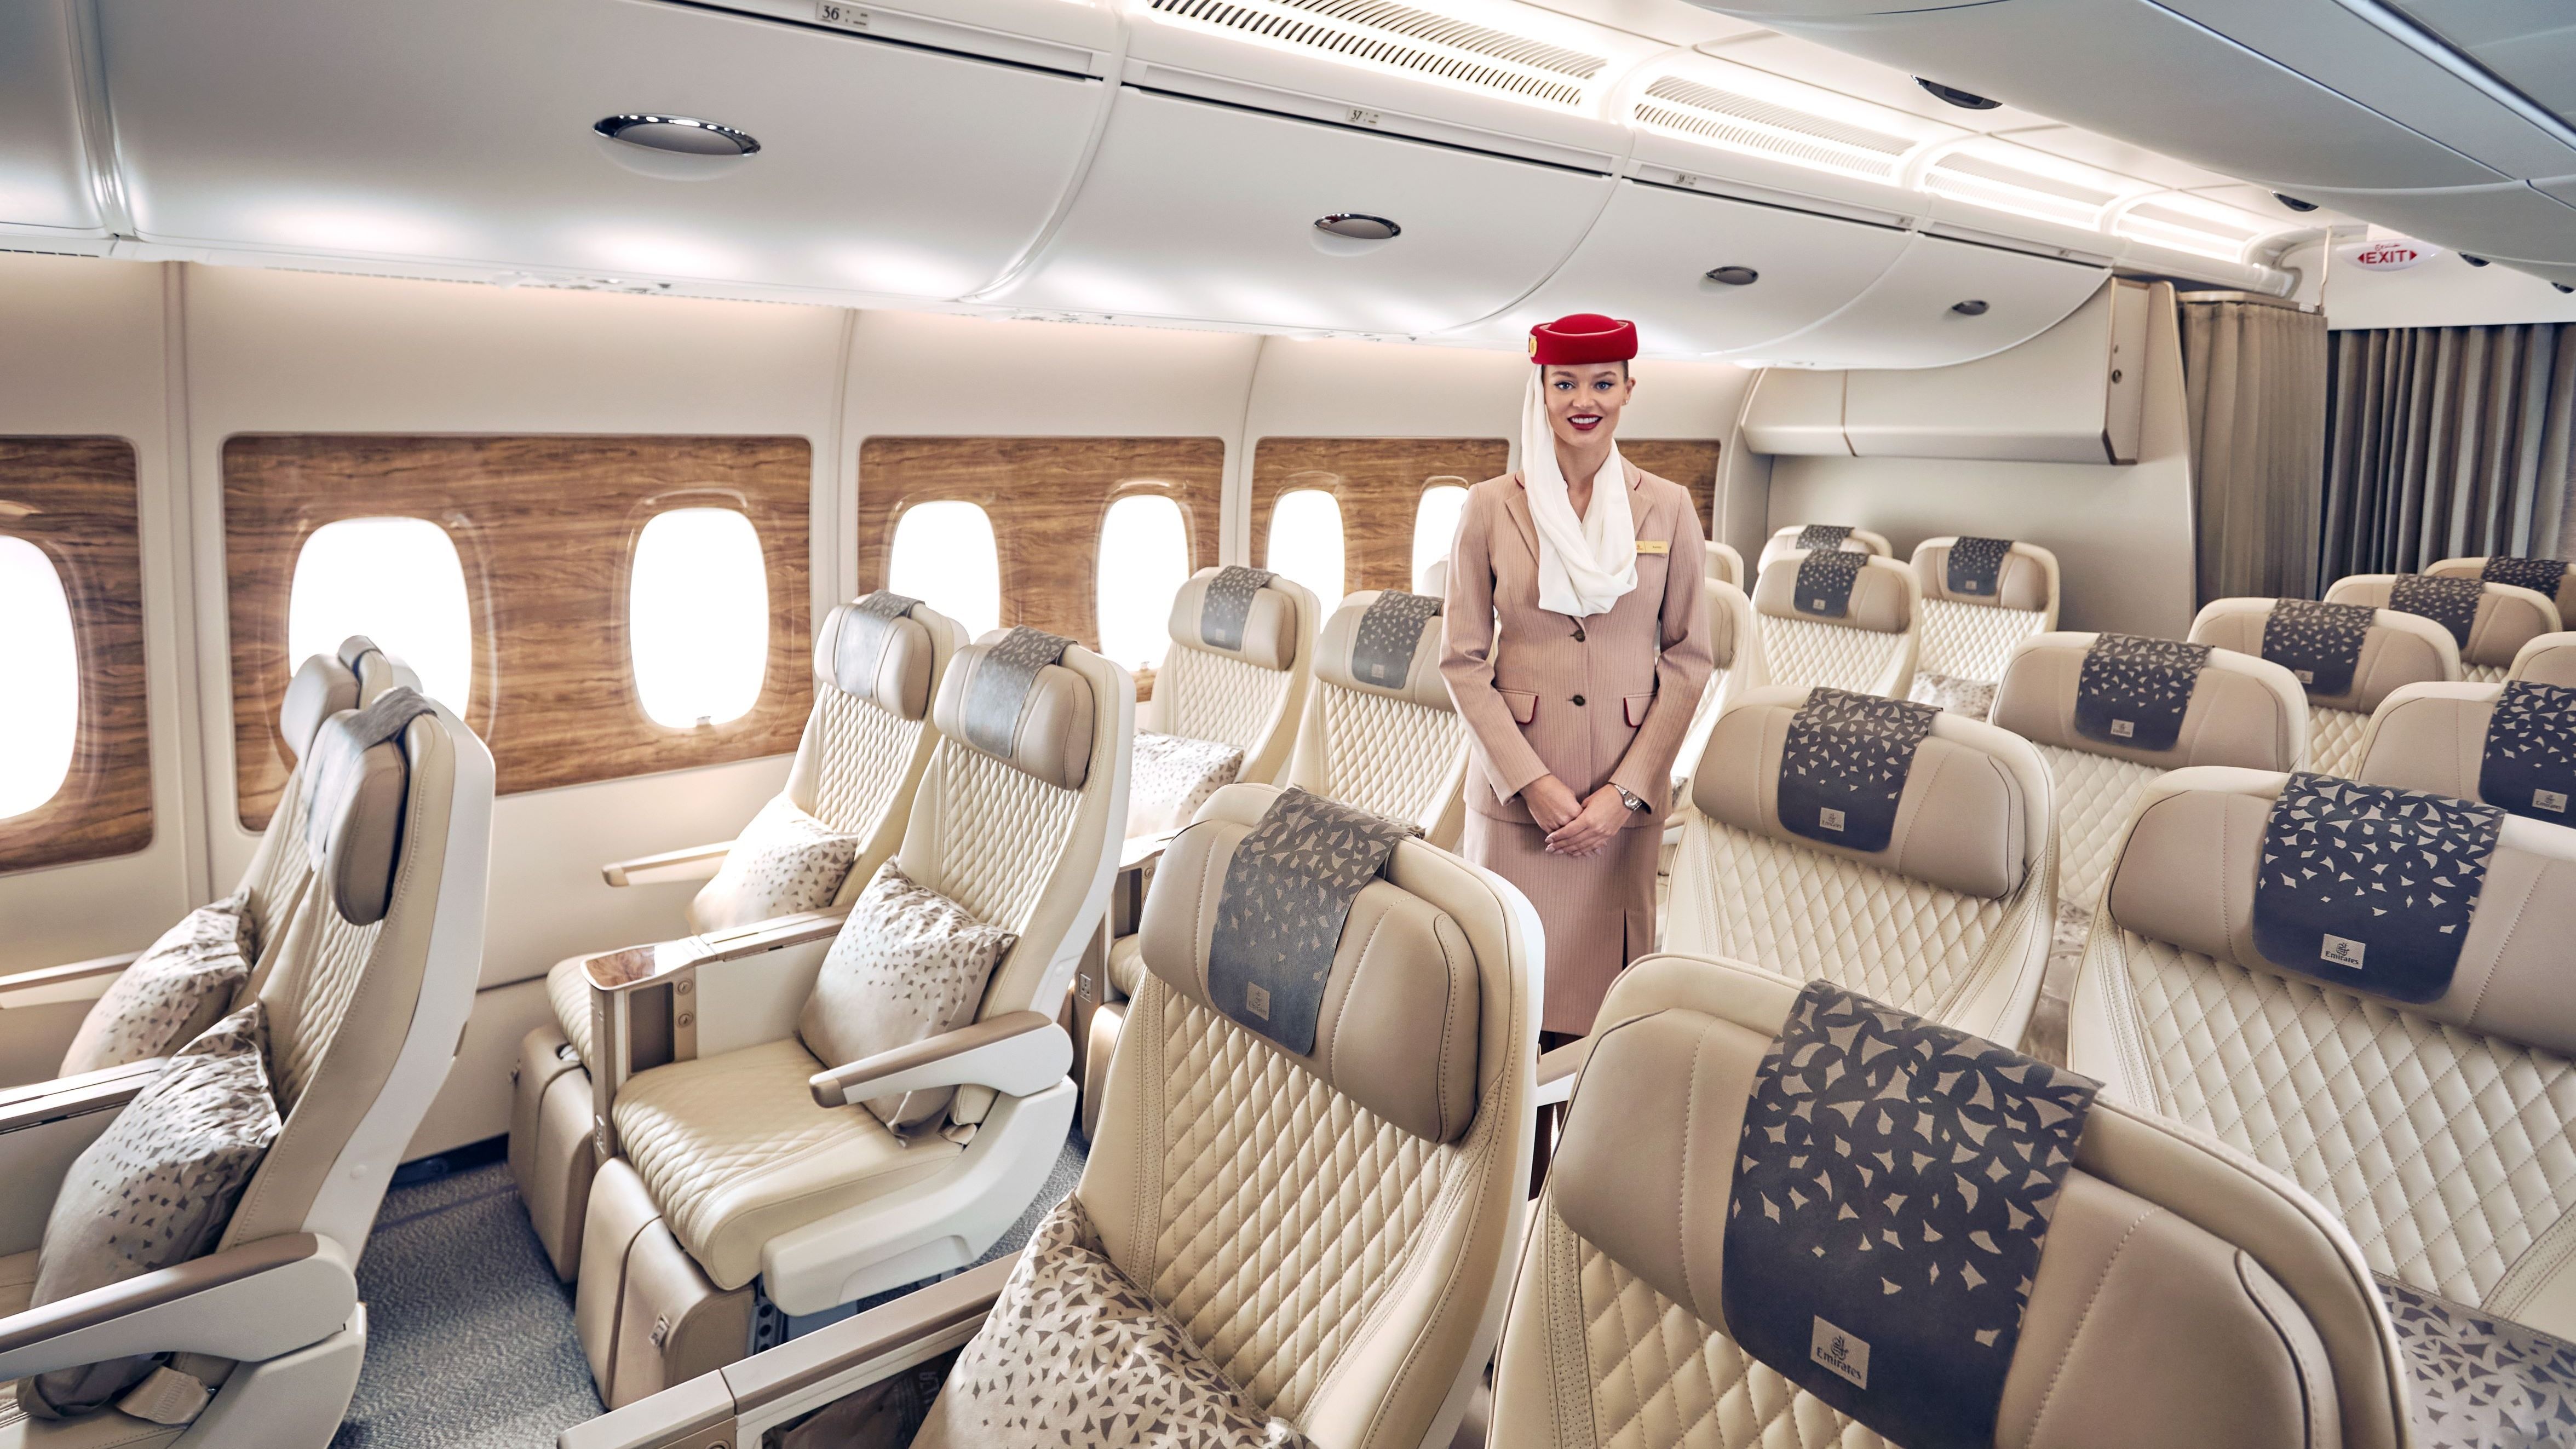 Emirates premium economy cabin